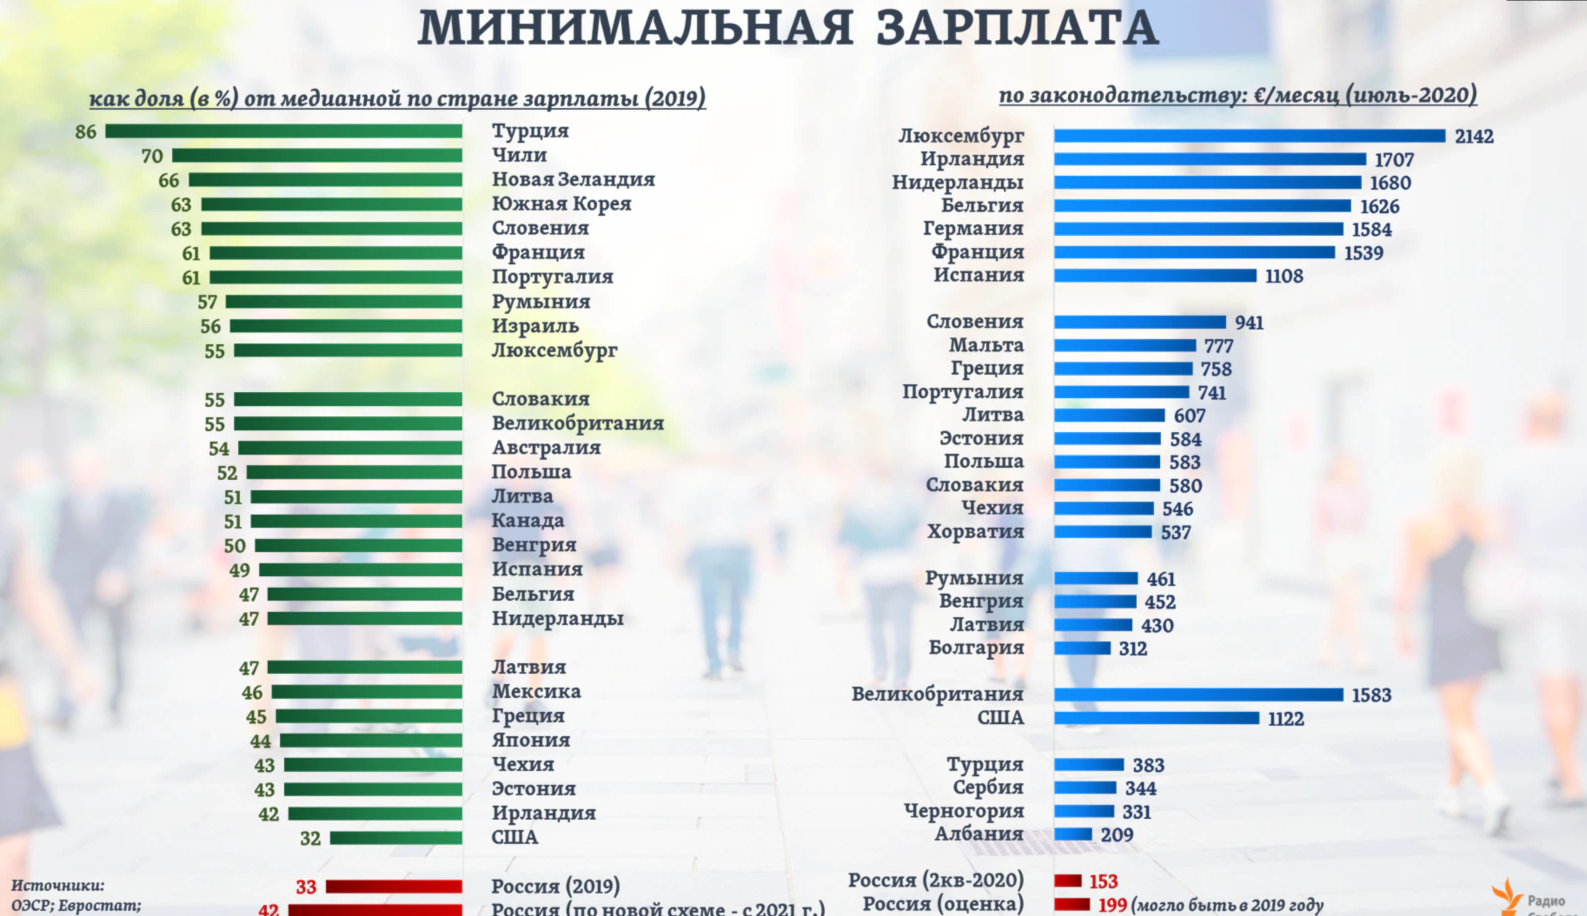 Минимальная зарплата в россии на сегодняшний. Размер средней заработной платы в России в 2021 году. Средняя минимальная зарплата. Средняя заработная плата по странам.